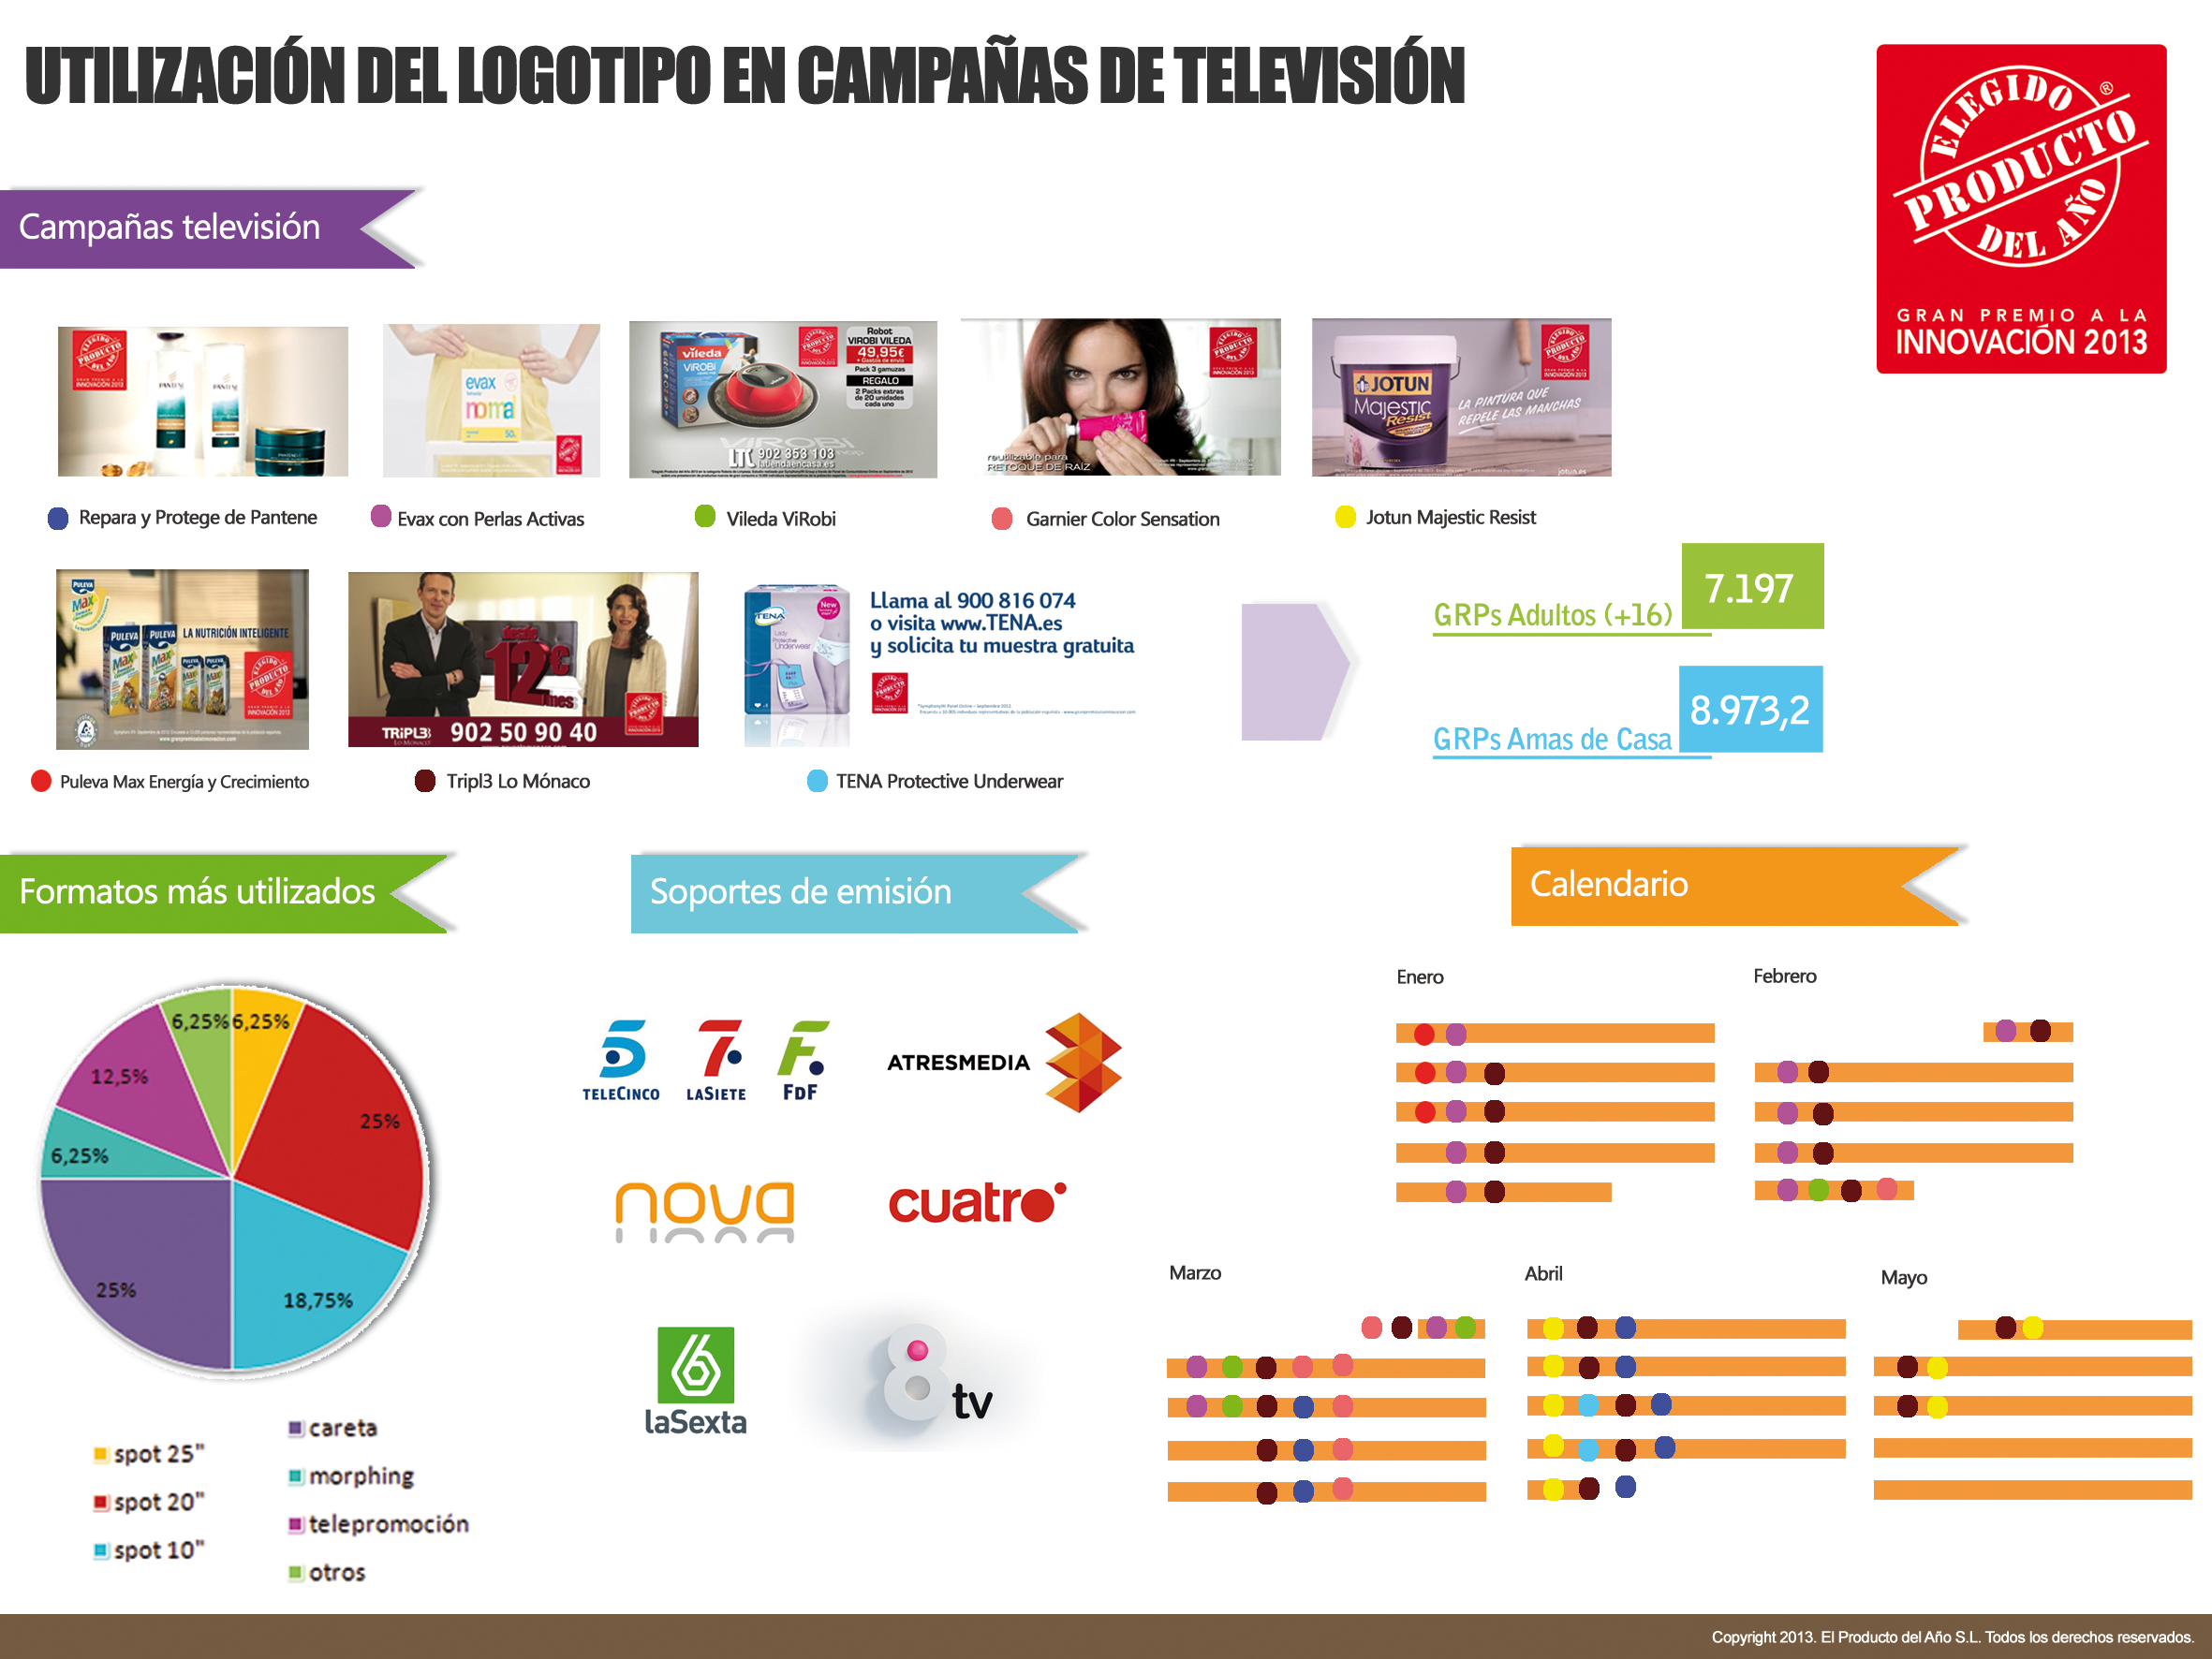 Evaluación De Las Campañas En Televisión Con El Logotipo